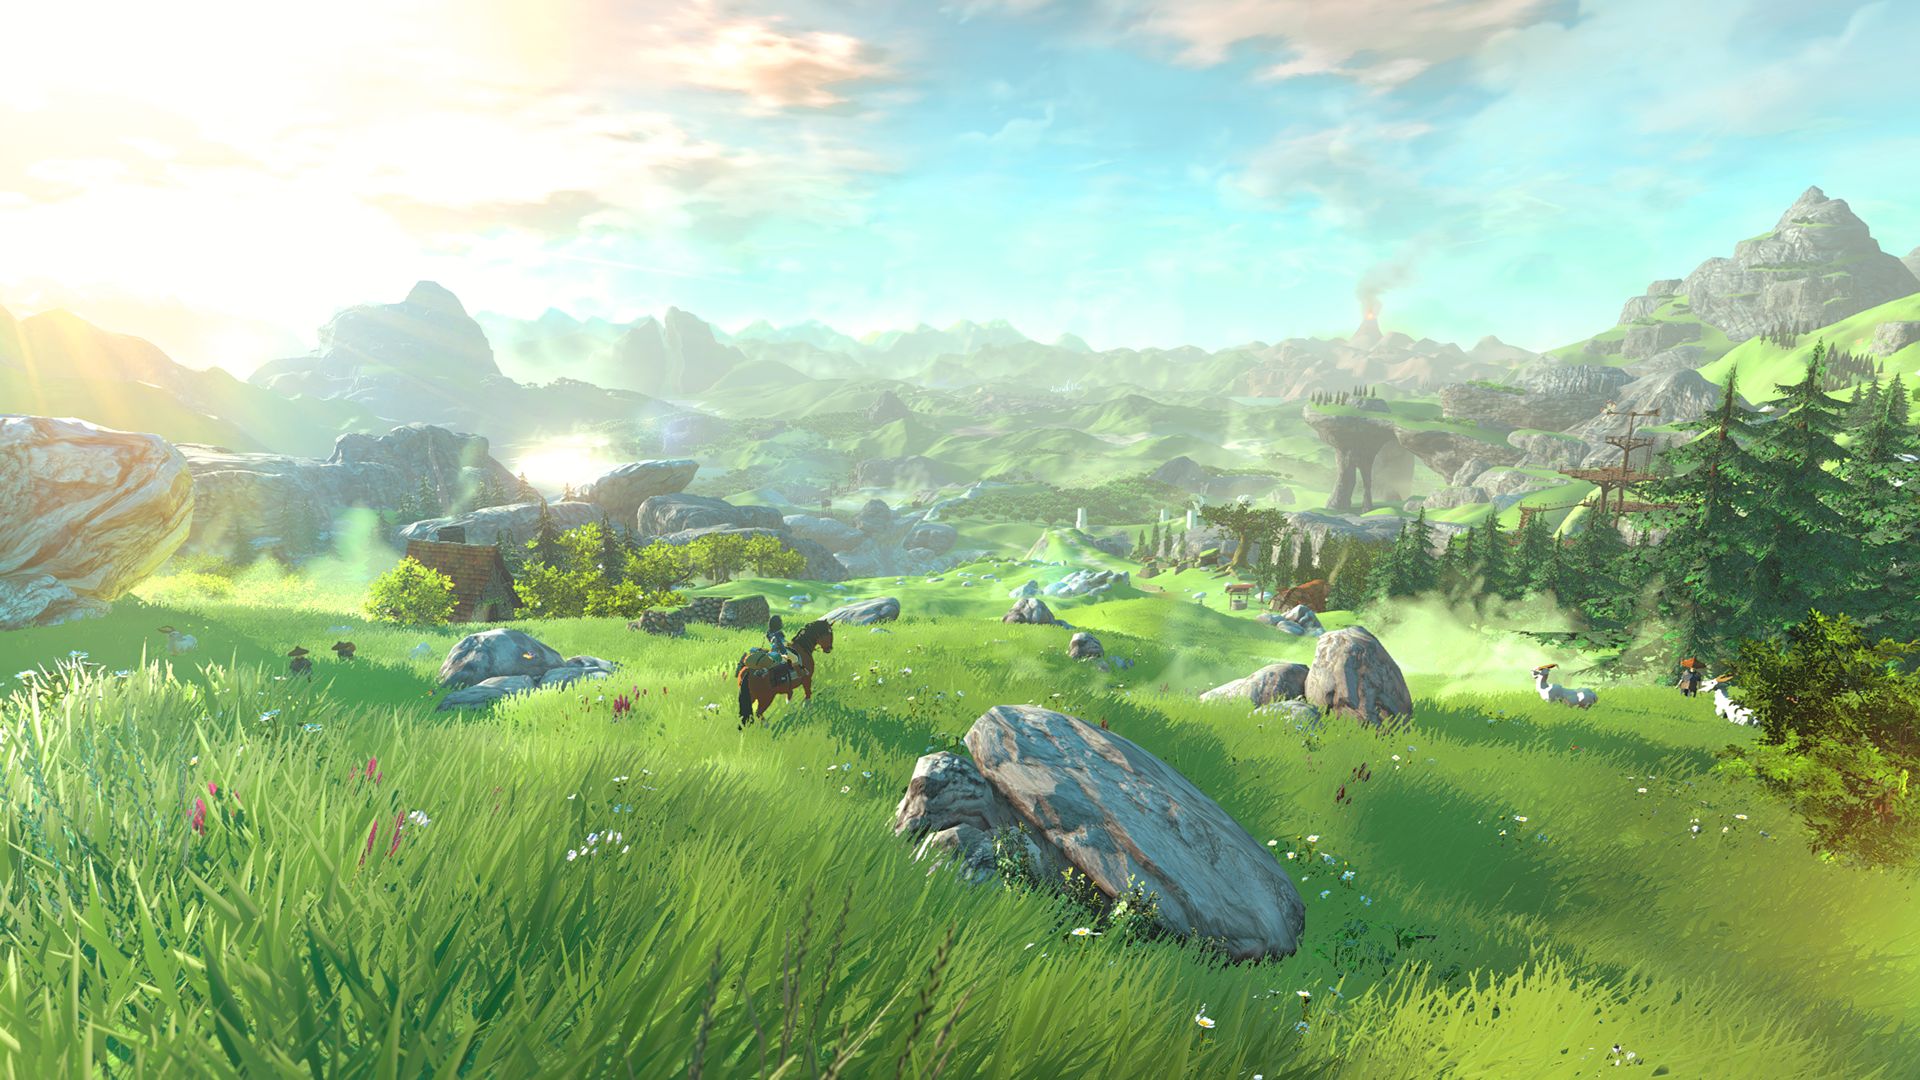 Zelda Wii U Hyrule Field Blank Meme Template